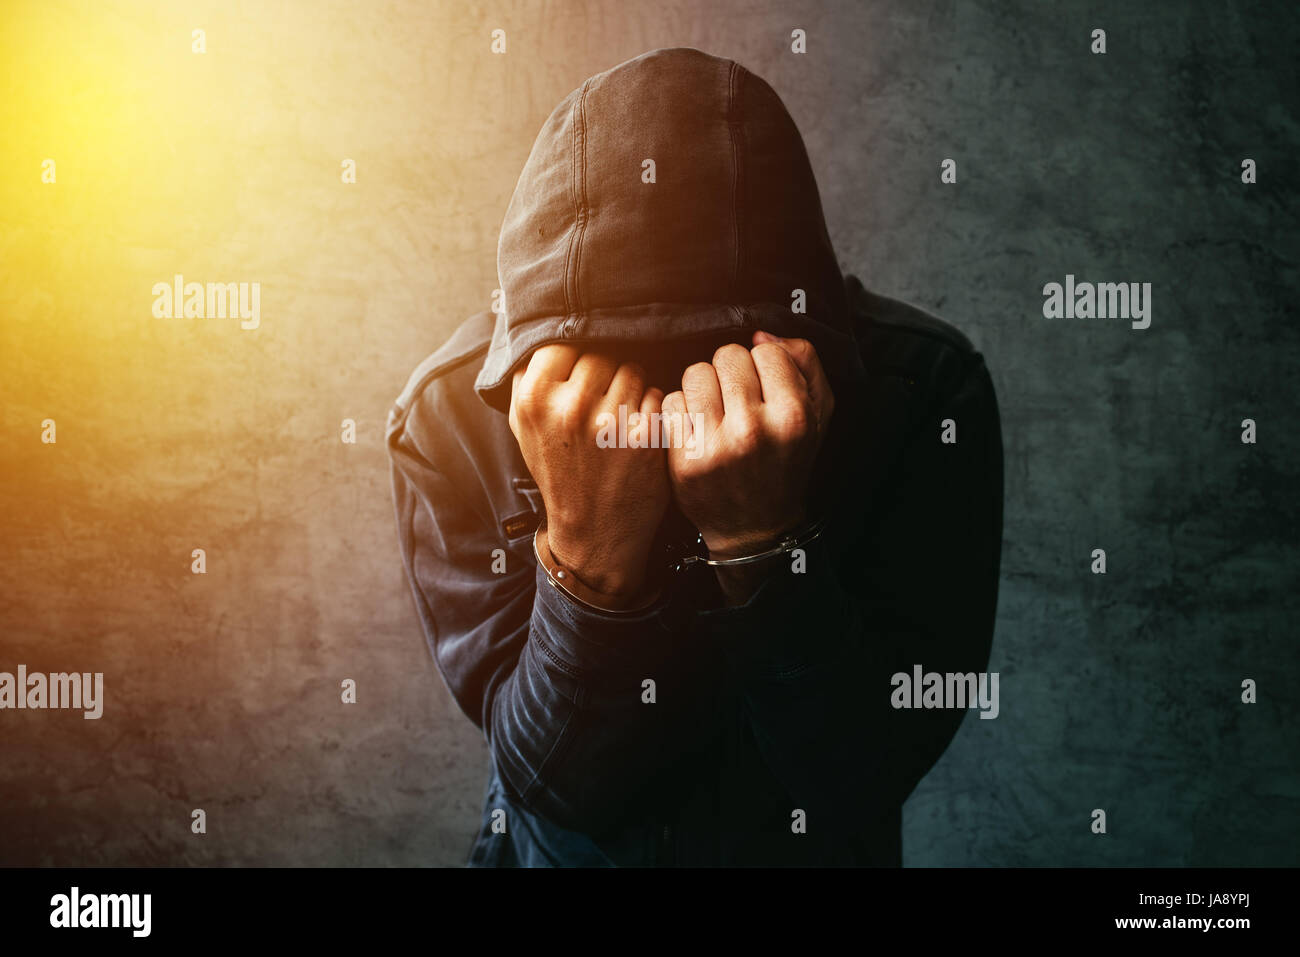 Verhafteten Computer-Hacker und Cyber-kriminellen mit Handschellen tragen Kapuzen Jacke Gesicht versteckt Stockfoto